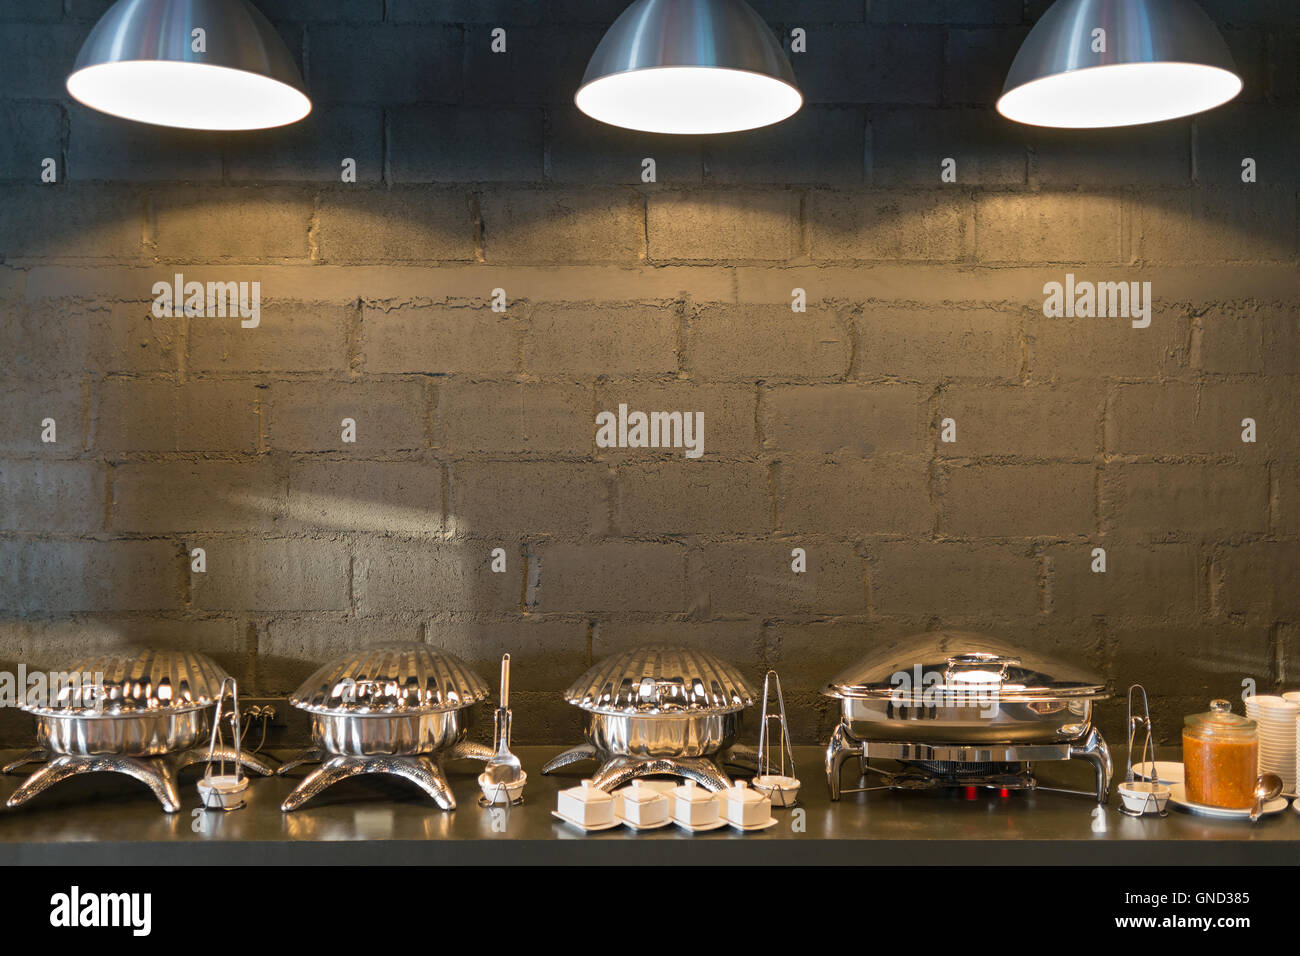 Büffet Linie Essen Container geformte Schalen mit drei Beleuchtung und dunklen Ziegel Wand Hintergrund. Stockfoto